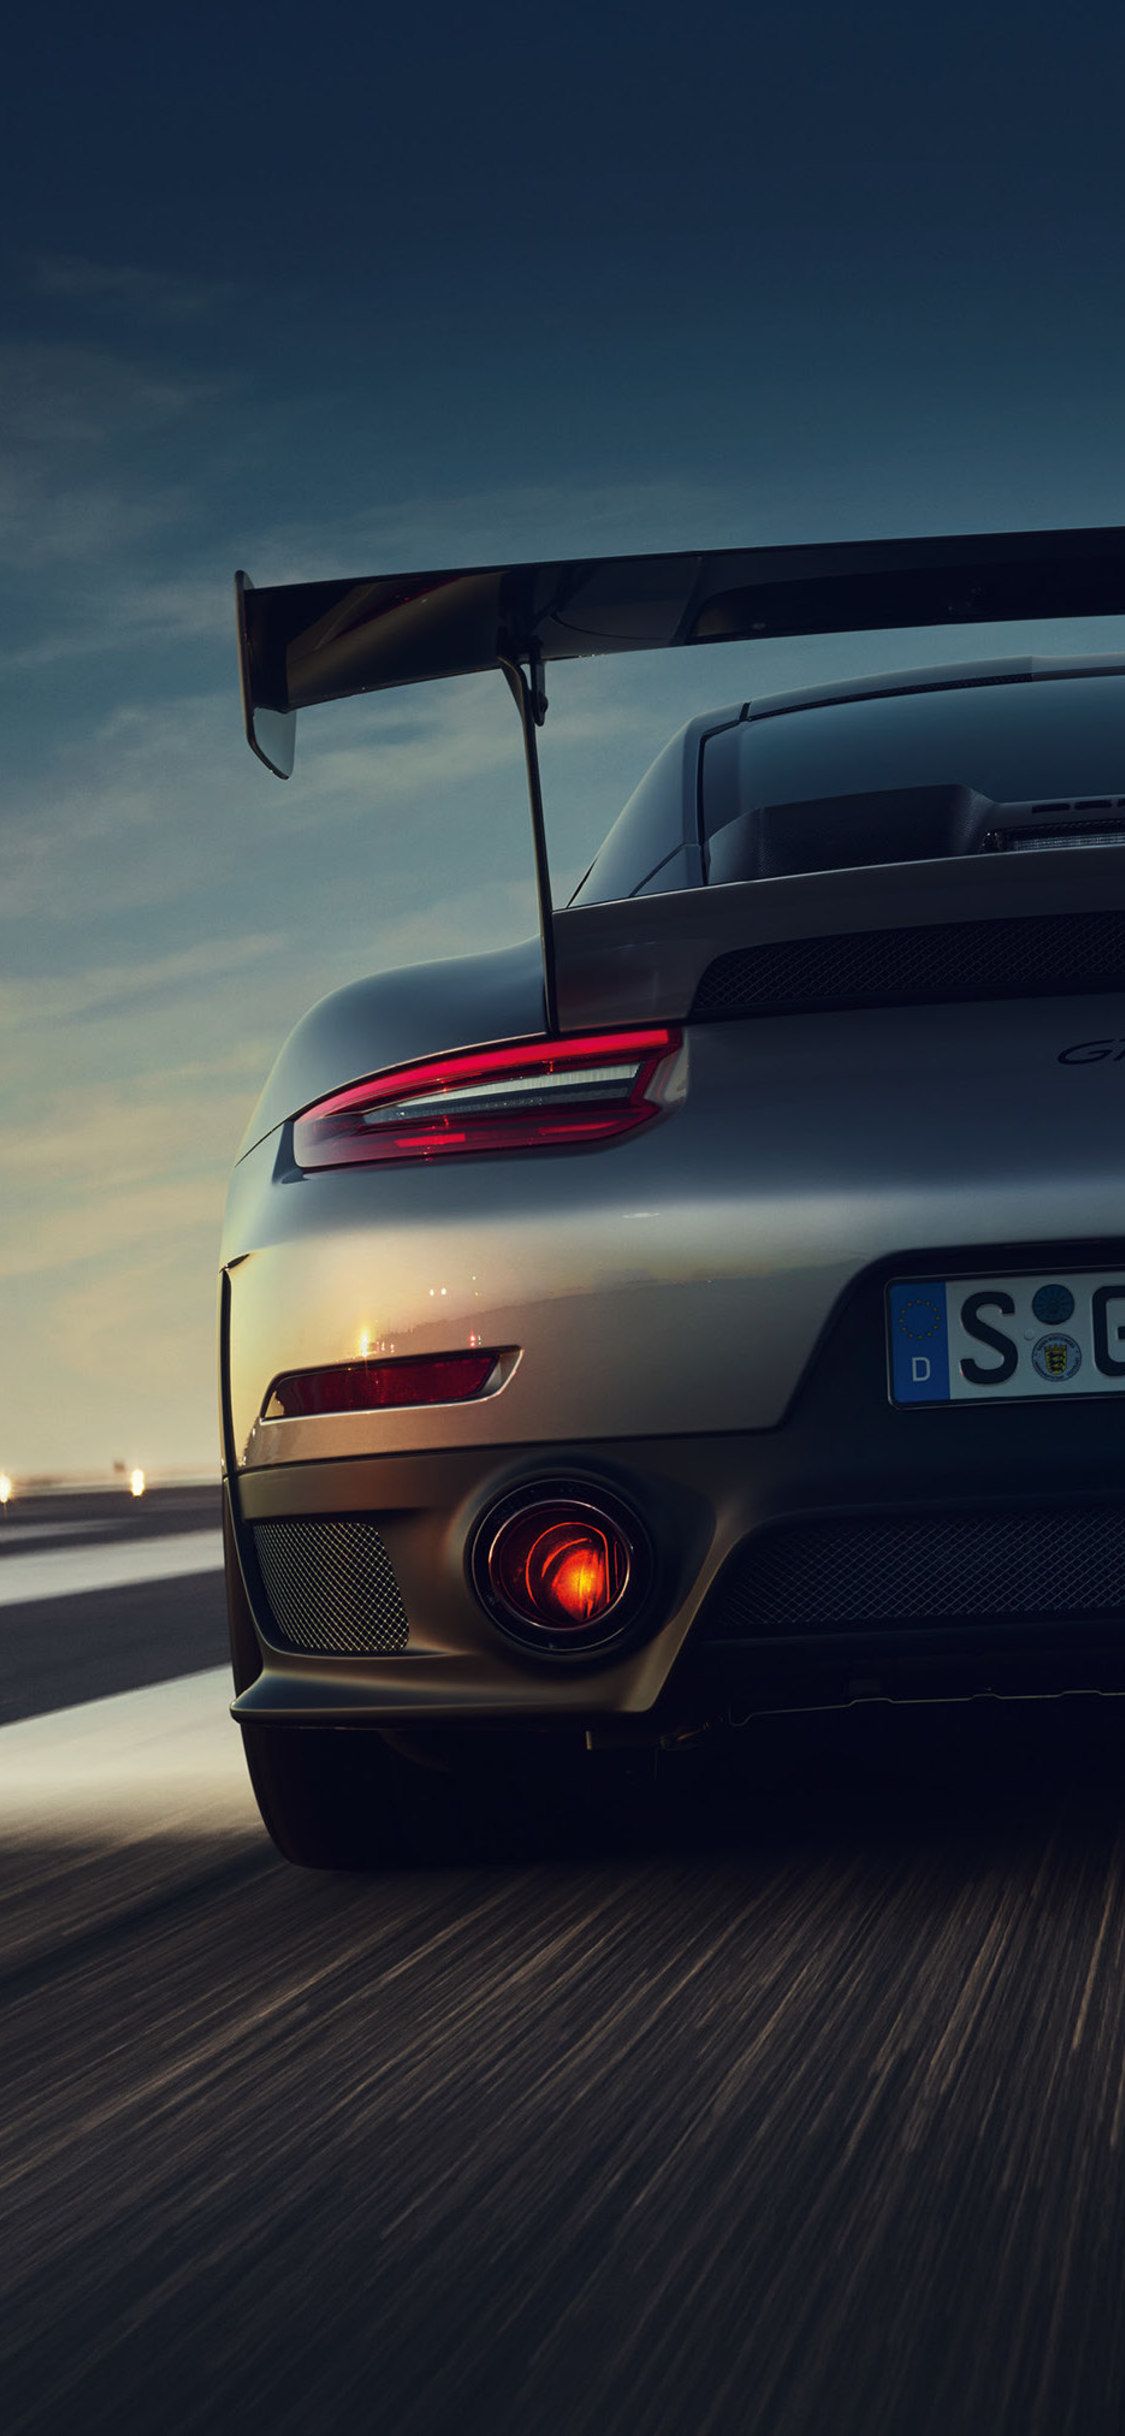 Những hình ảnh về chiếc Porsche 911 trên điện thoại của bạn sẽ càng khiến bạn trầm trồ ngưỡng mộ về dòng xe thể thao này. Với thiết kế đặc trưng và sức mạnh đầy ấn tượng, chiếc 911 sẽ là một lựa chọn tuyệt vời cho những người yêu thích xe hơi.